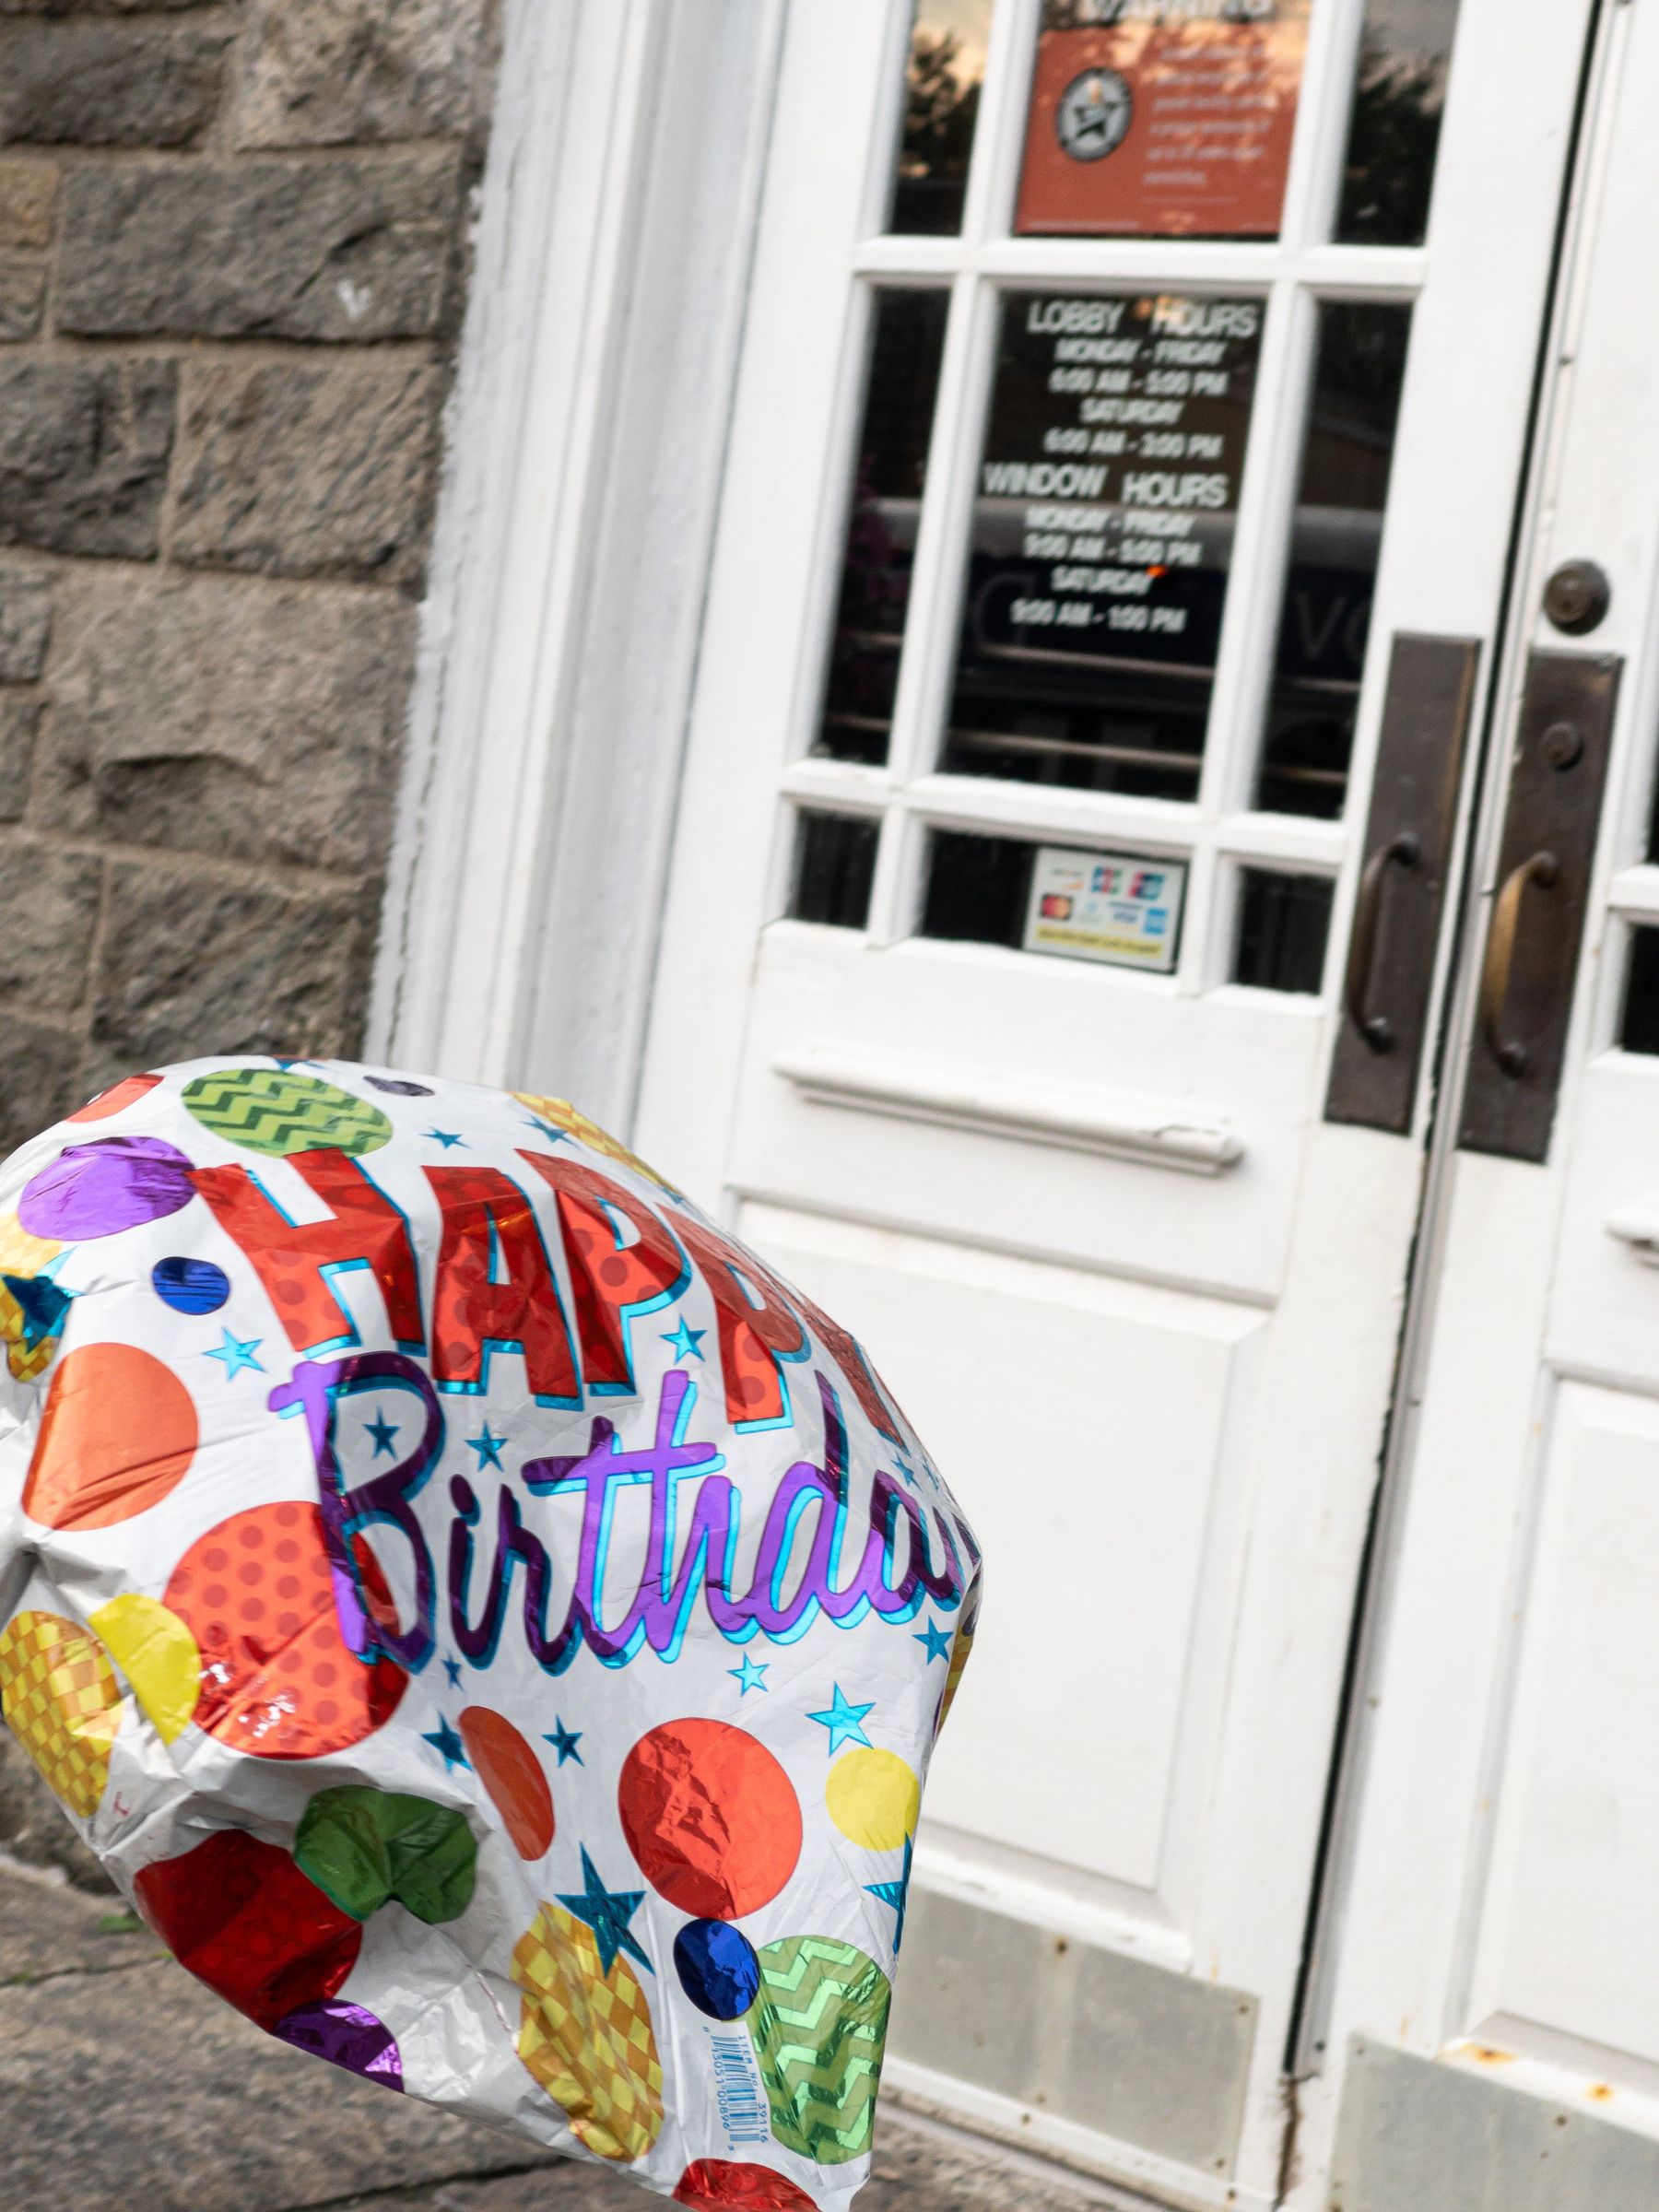 Birthday balloon in lower left corner, bobbing in front of post office doors.